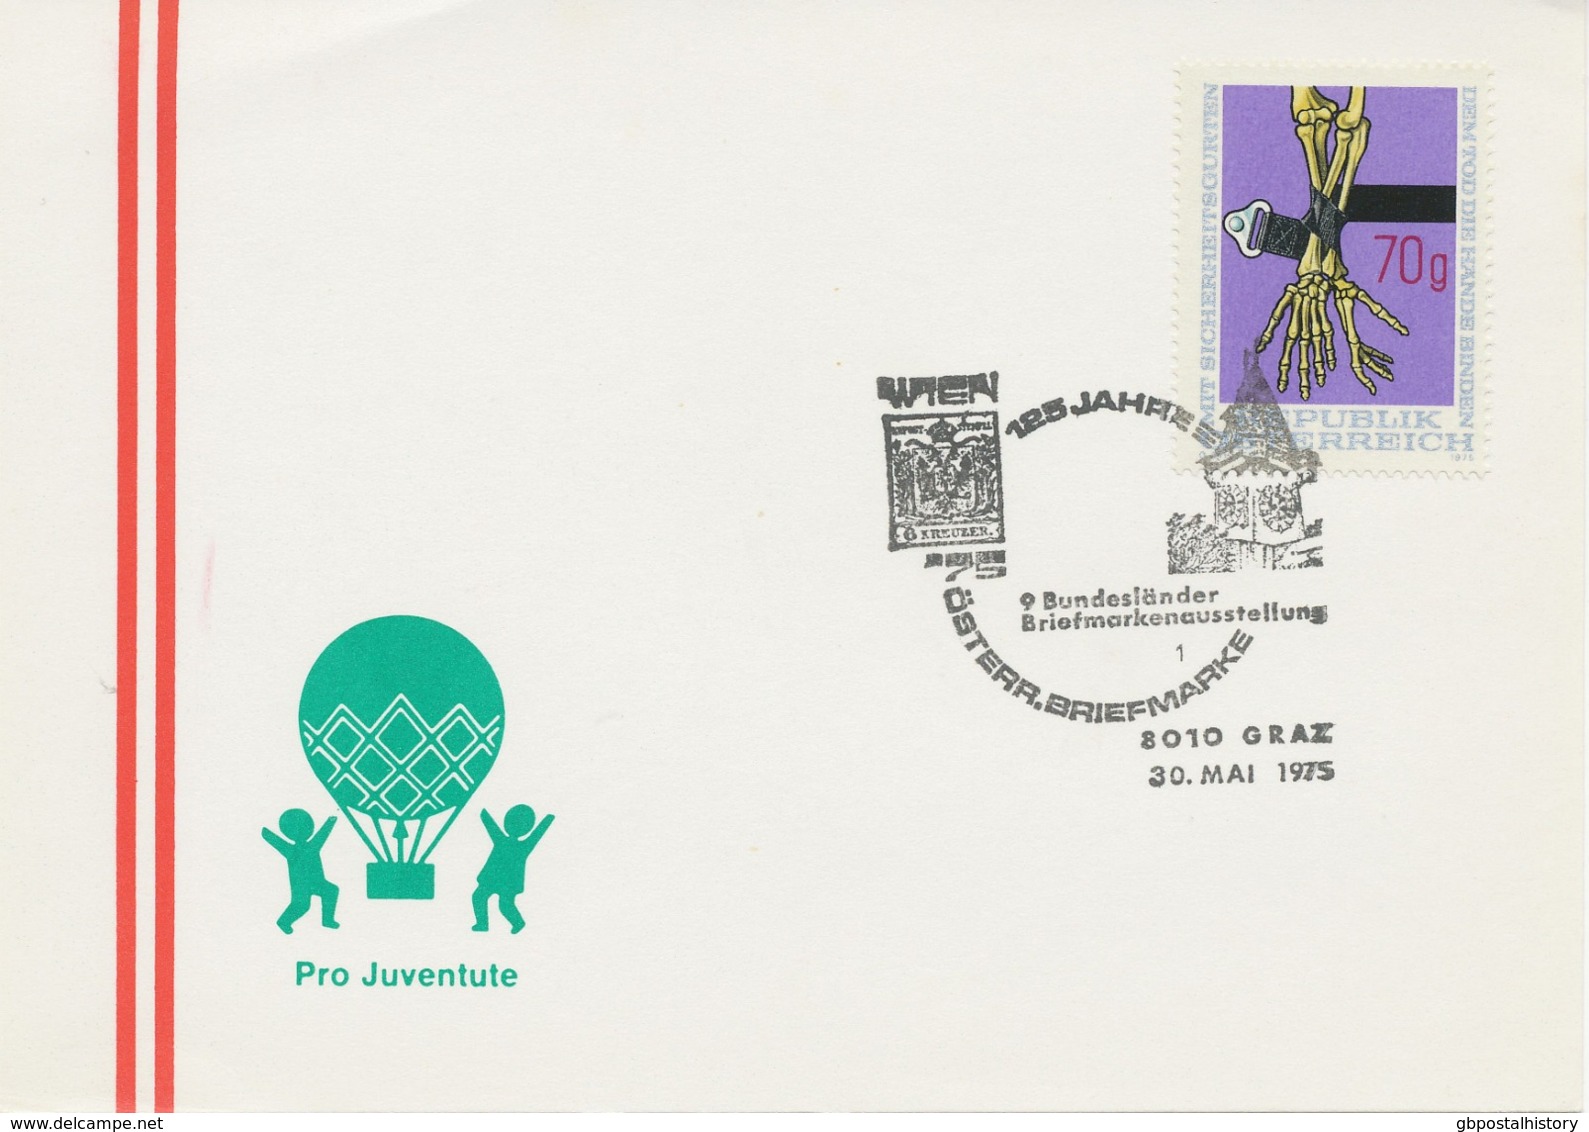 ÖSTERREICH 1975 8010 GRAZ 125 Jahre Österr. Briefmarke - 9. Bundesländer Briefmarkenausstellung - Maschinenstempel (EMA)